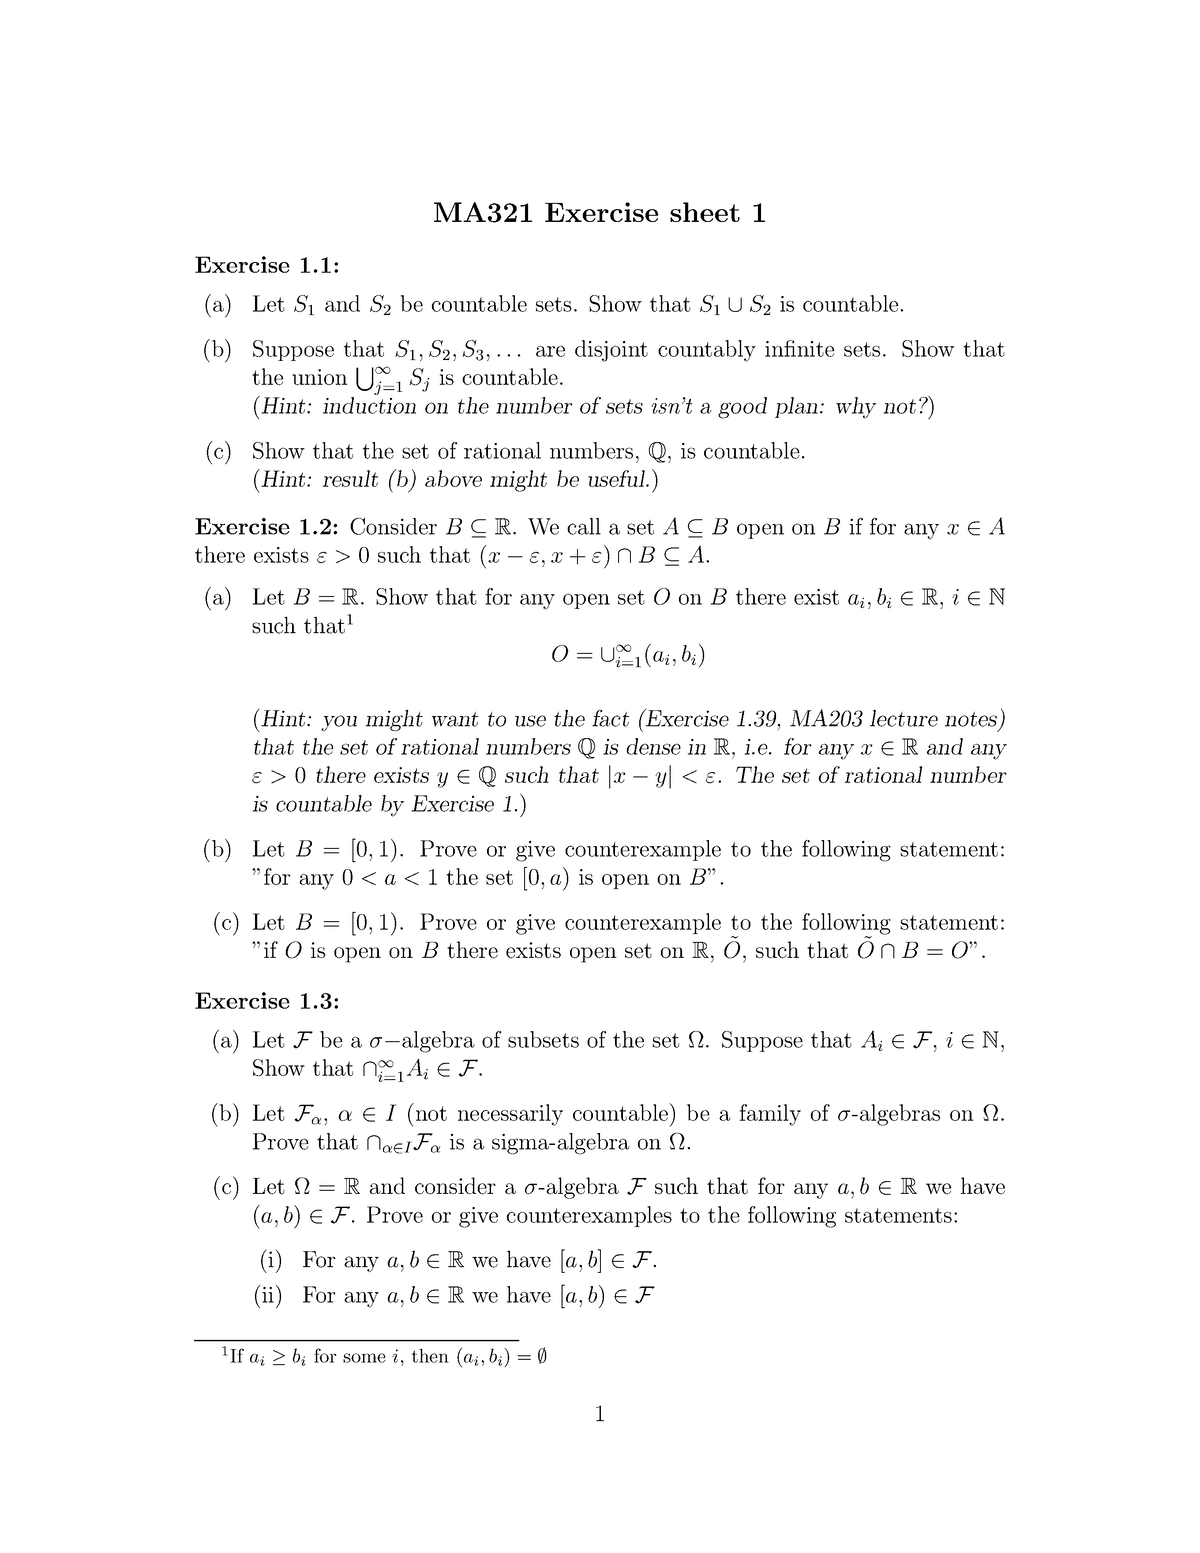 ex1-1-week-1-exercise-sheet-ma321-exercise-sheet-1-exercise-1-a